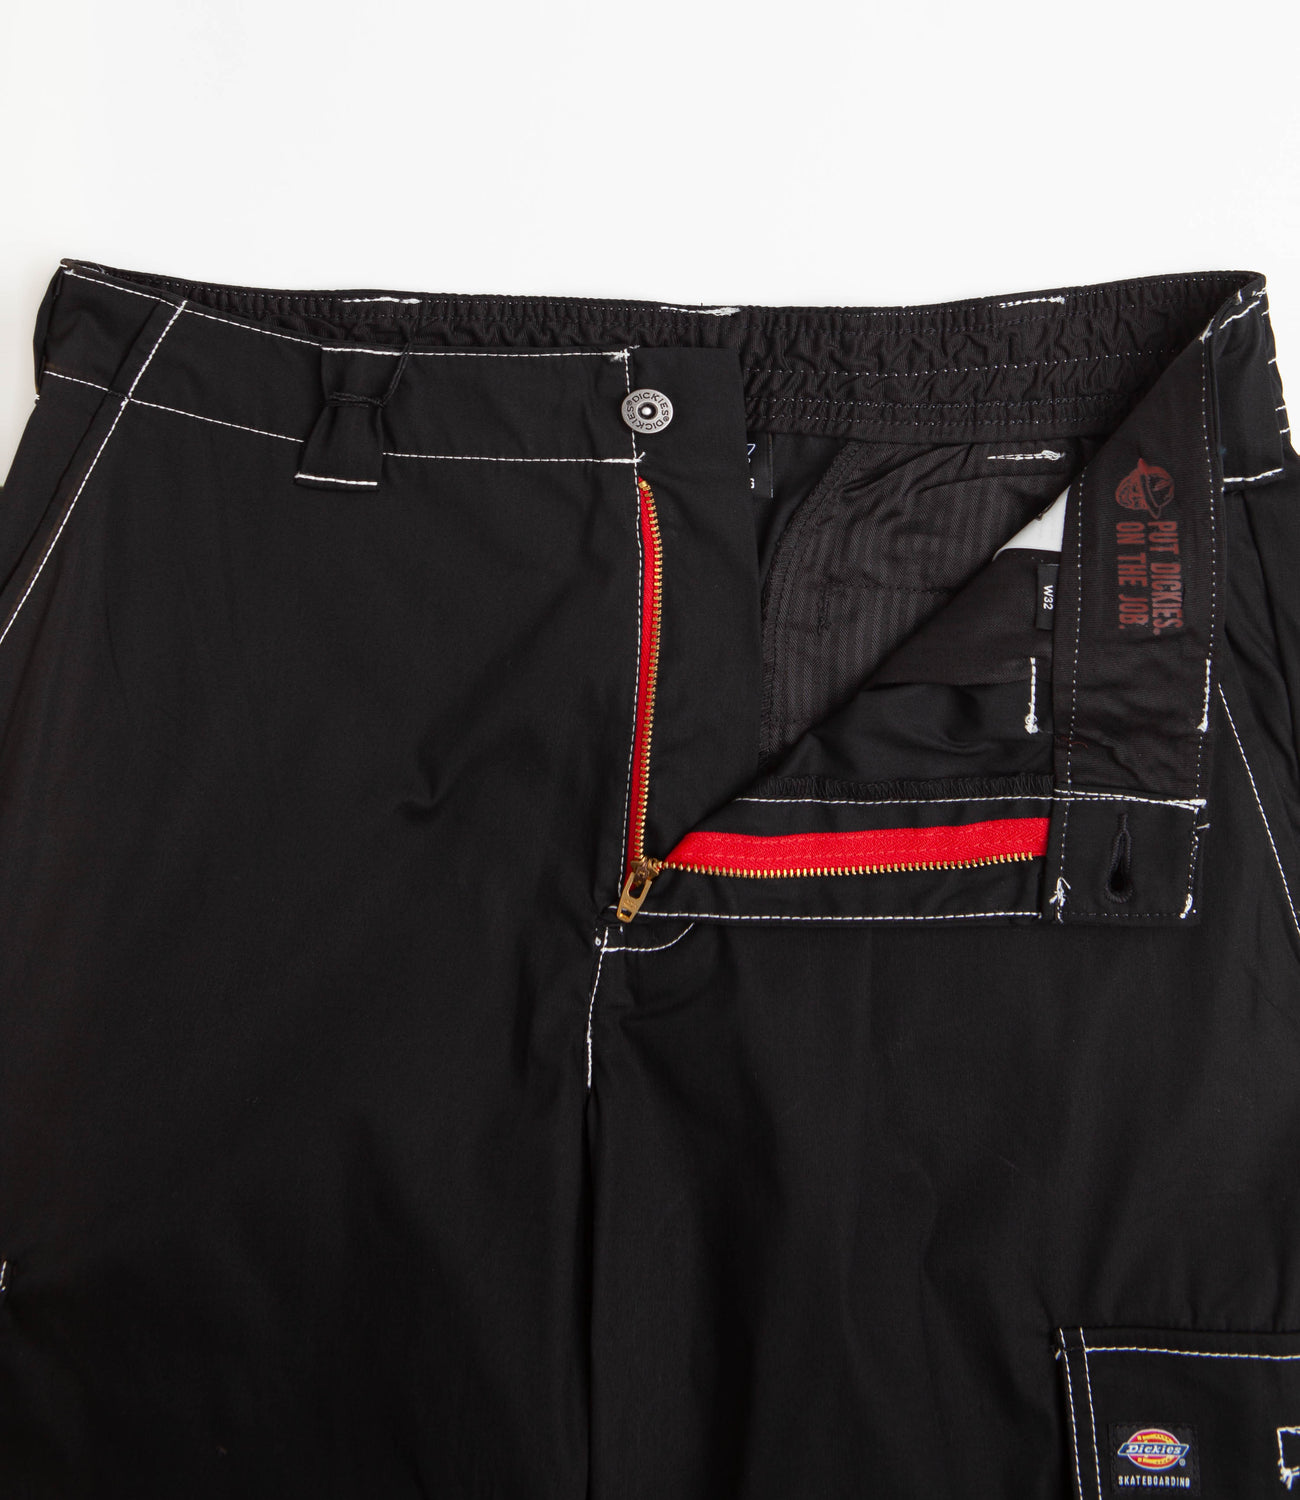 DODOING Men's Outdoor Pants Lightweight Work Trousers Combat Cargo Work  Pants with Elastic Waist Hiking Fishing Outdoor Pants - Walmart.com